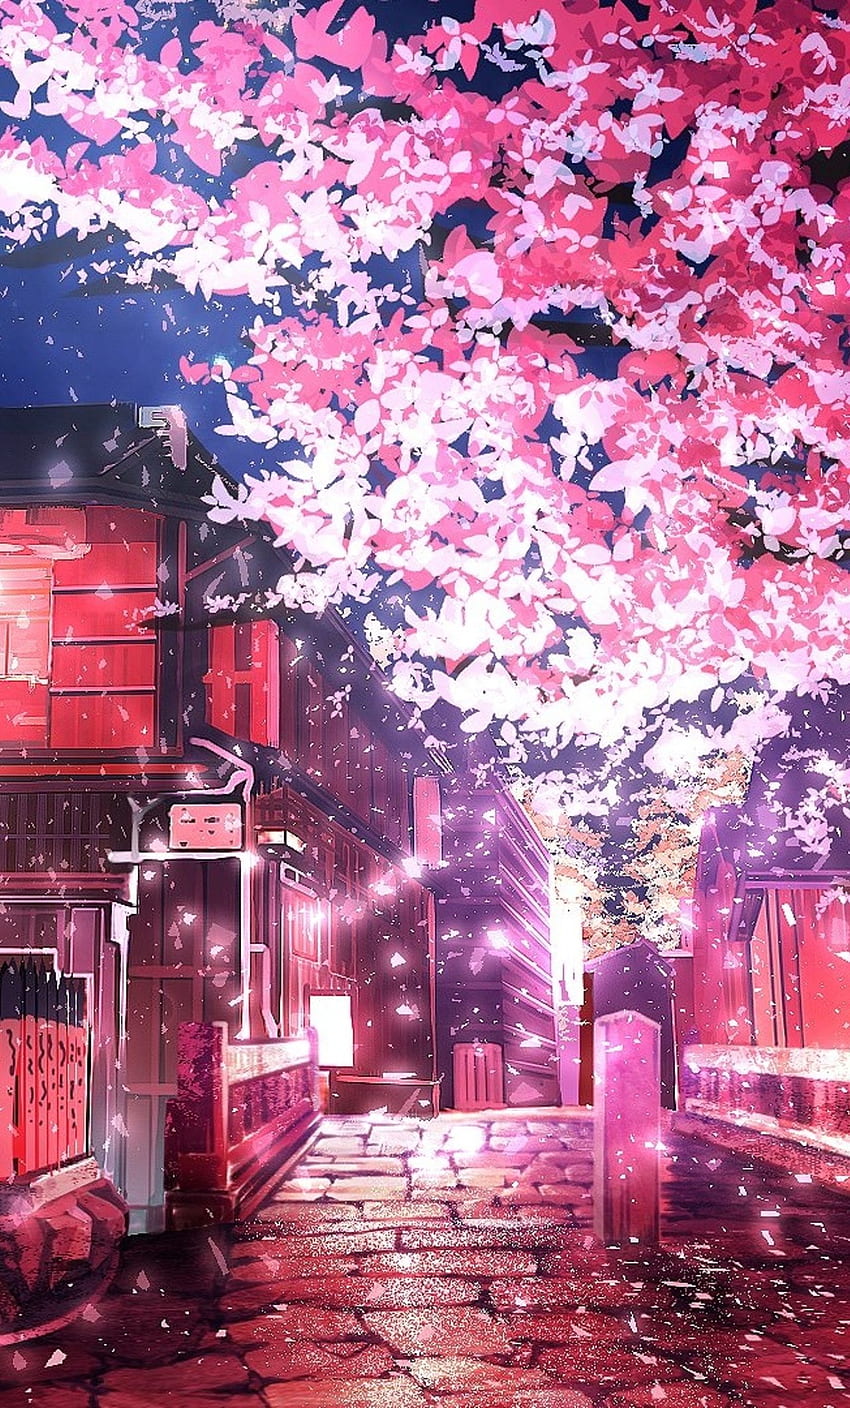 Hình nền Anime iPhone với cảnh quan Cherry Tree và hoa anh đào sẽ làm bạn say đắm trong khung cảnh huyền ảo của Nhật Bản. Với những bông hoa đào lấp lánh trên nền xanh lá, hình ảnh này chứa đựng sự yên bình và tình cảm của thiên nhiên.